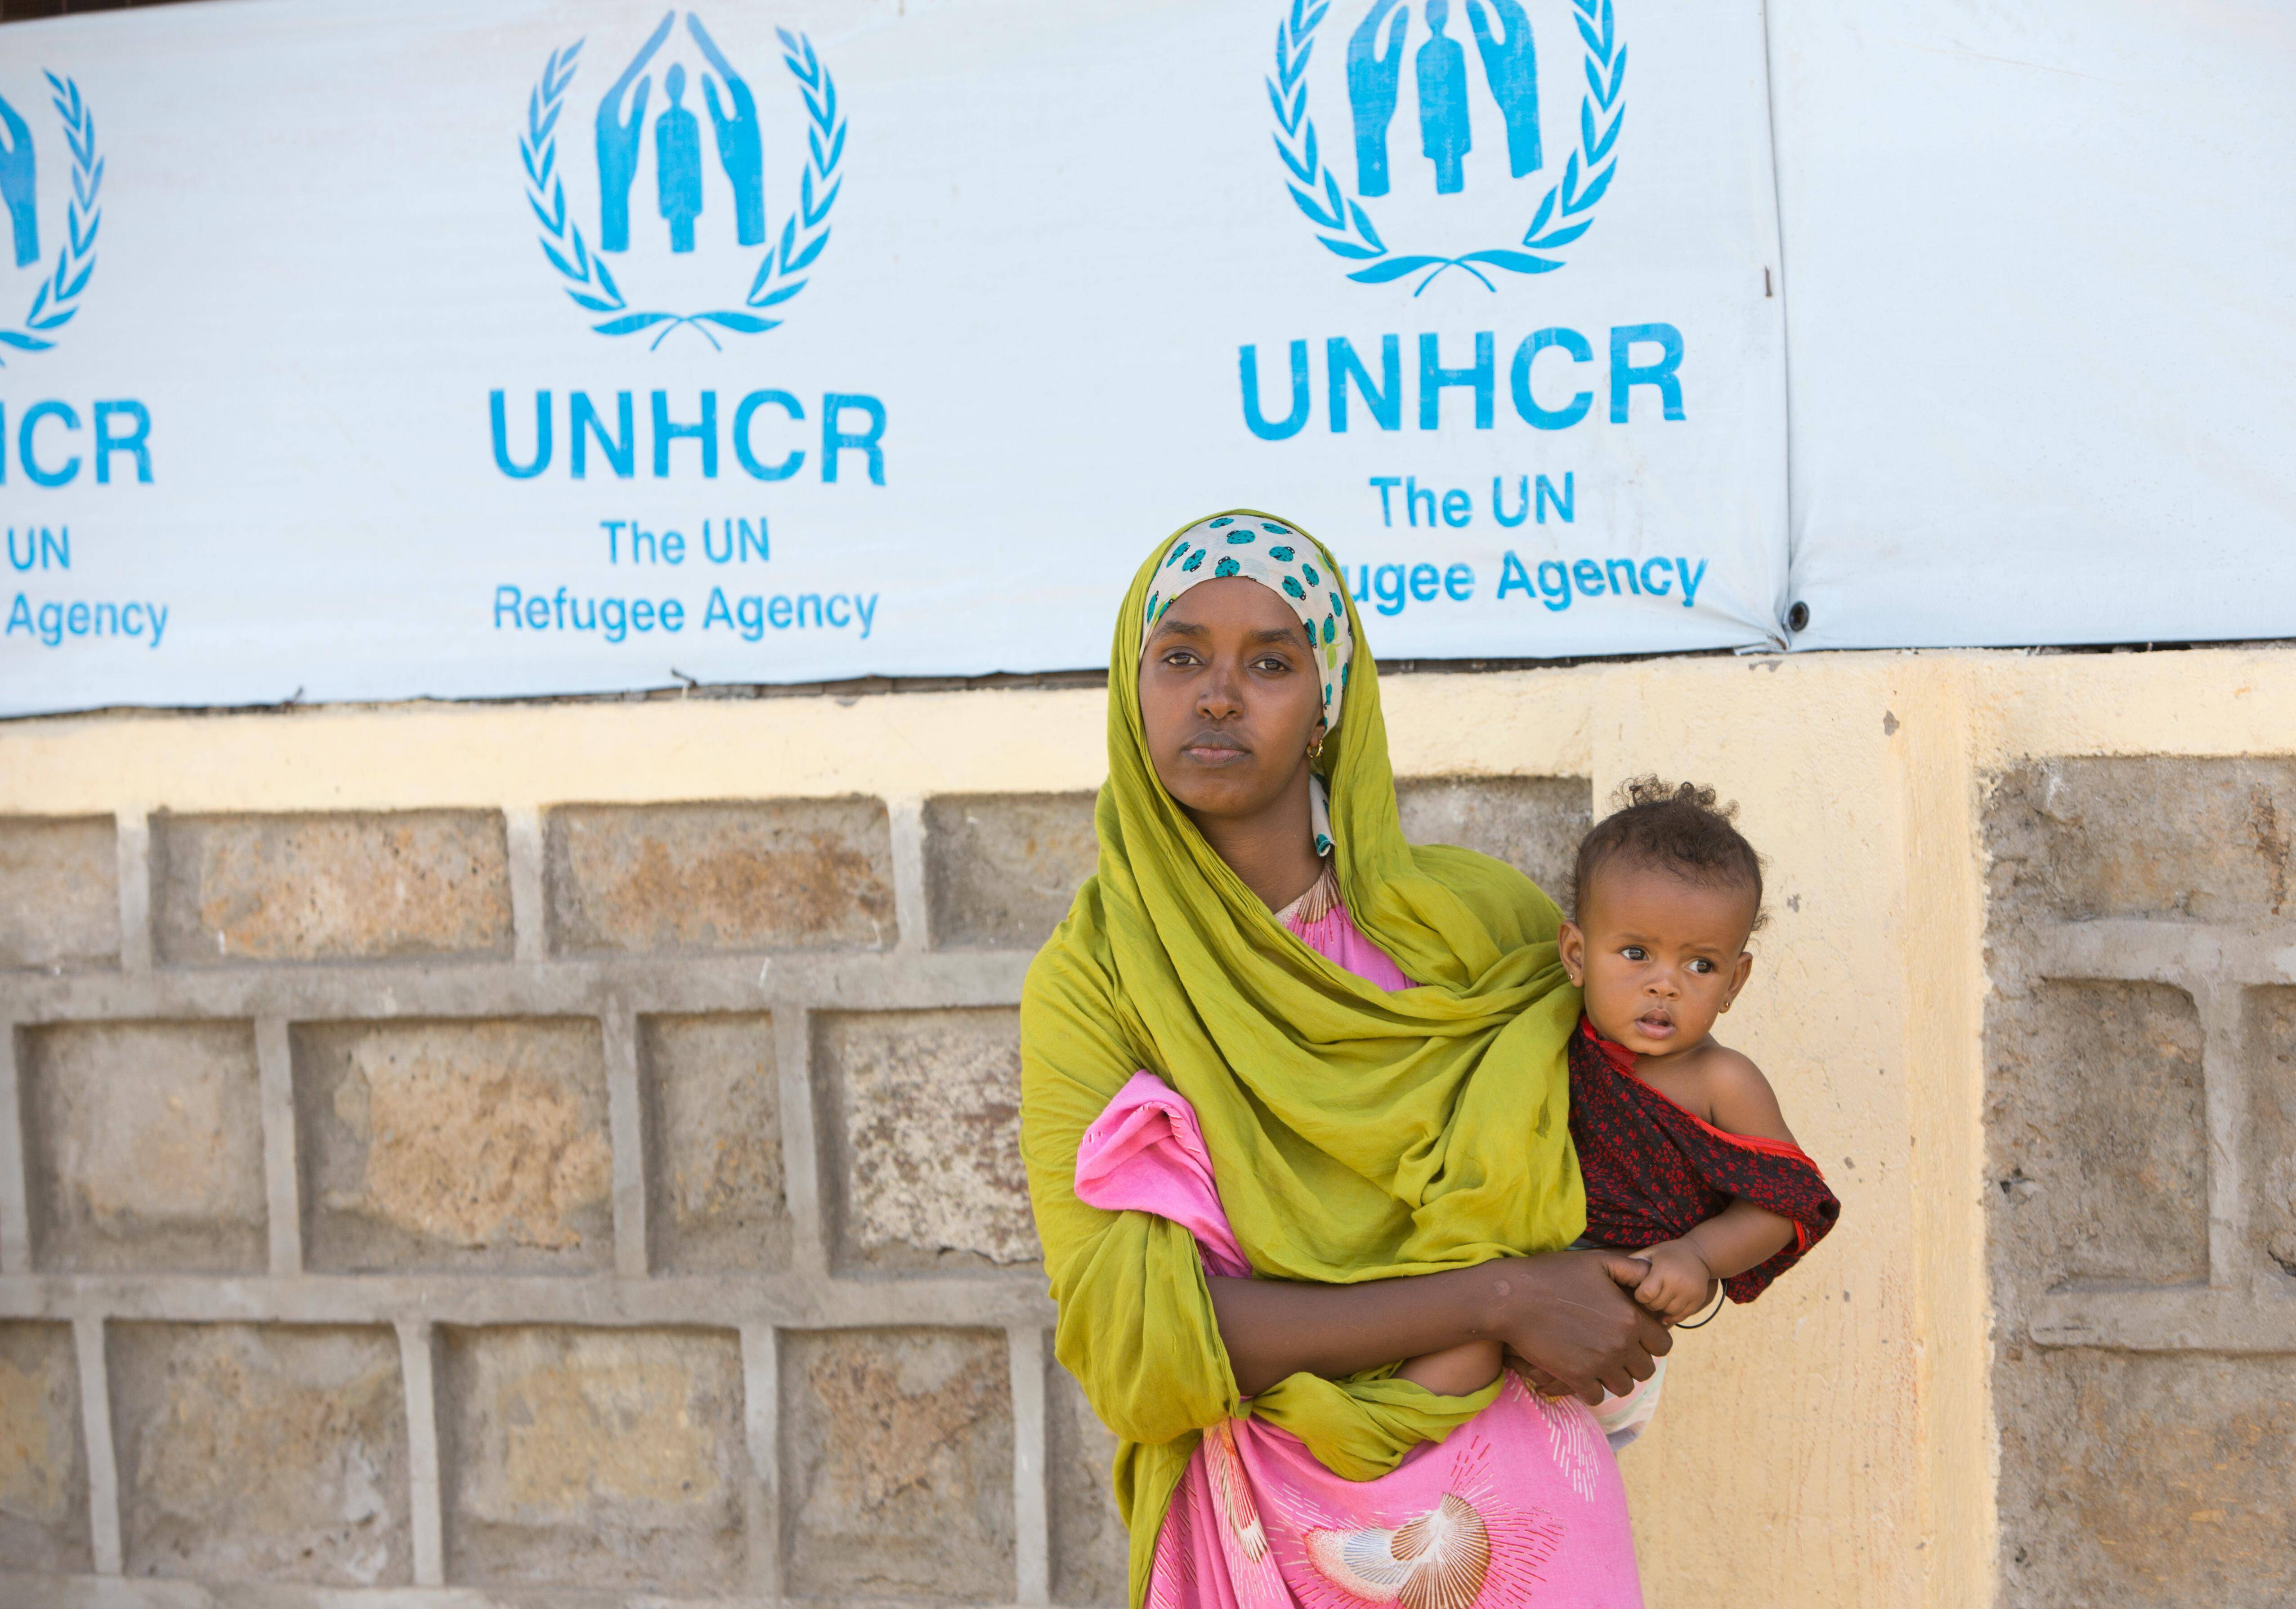 Eine geflüchtete Frau mit ihrem Kind in Kenia vor einem Schild des UN-Flüchtlingshilfswerks.